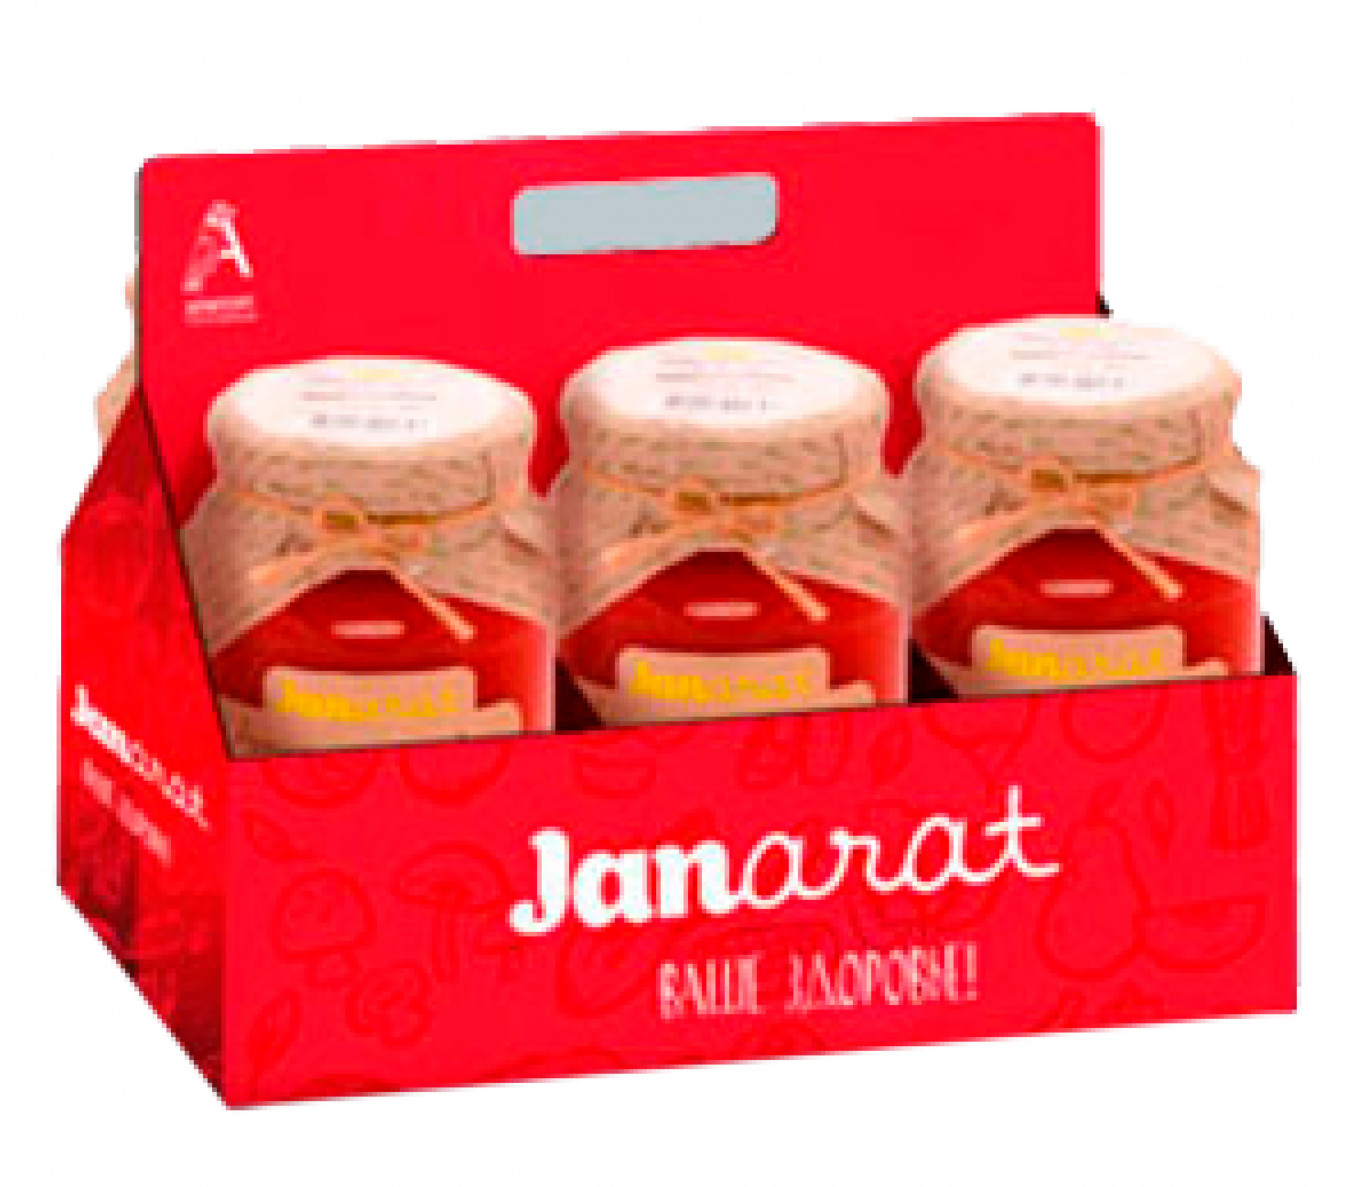 Дизайн упаковки для линейки натуральной консервации JANARAT